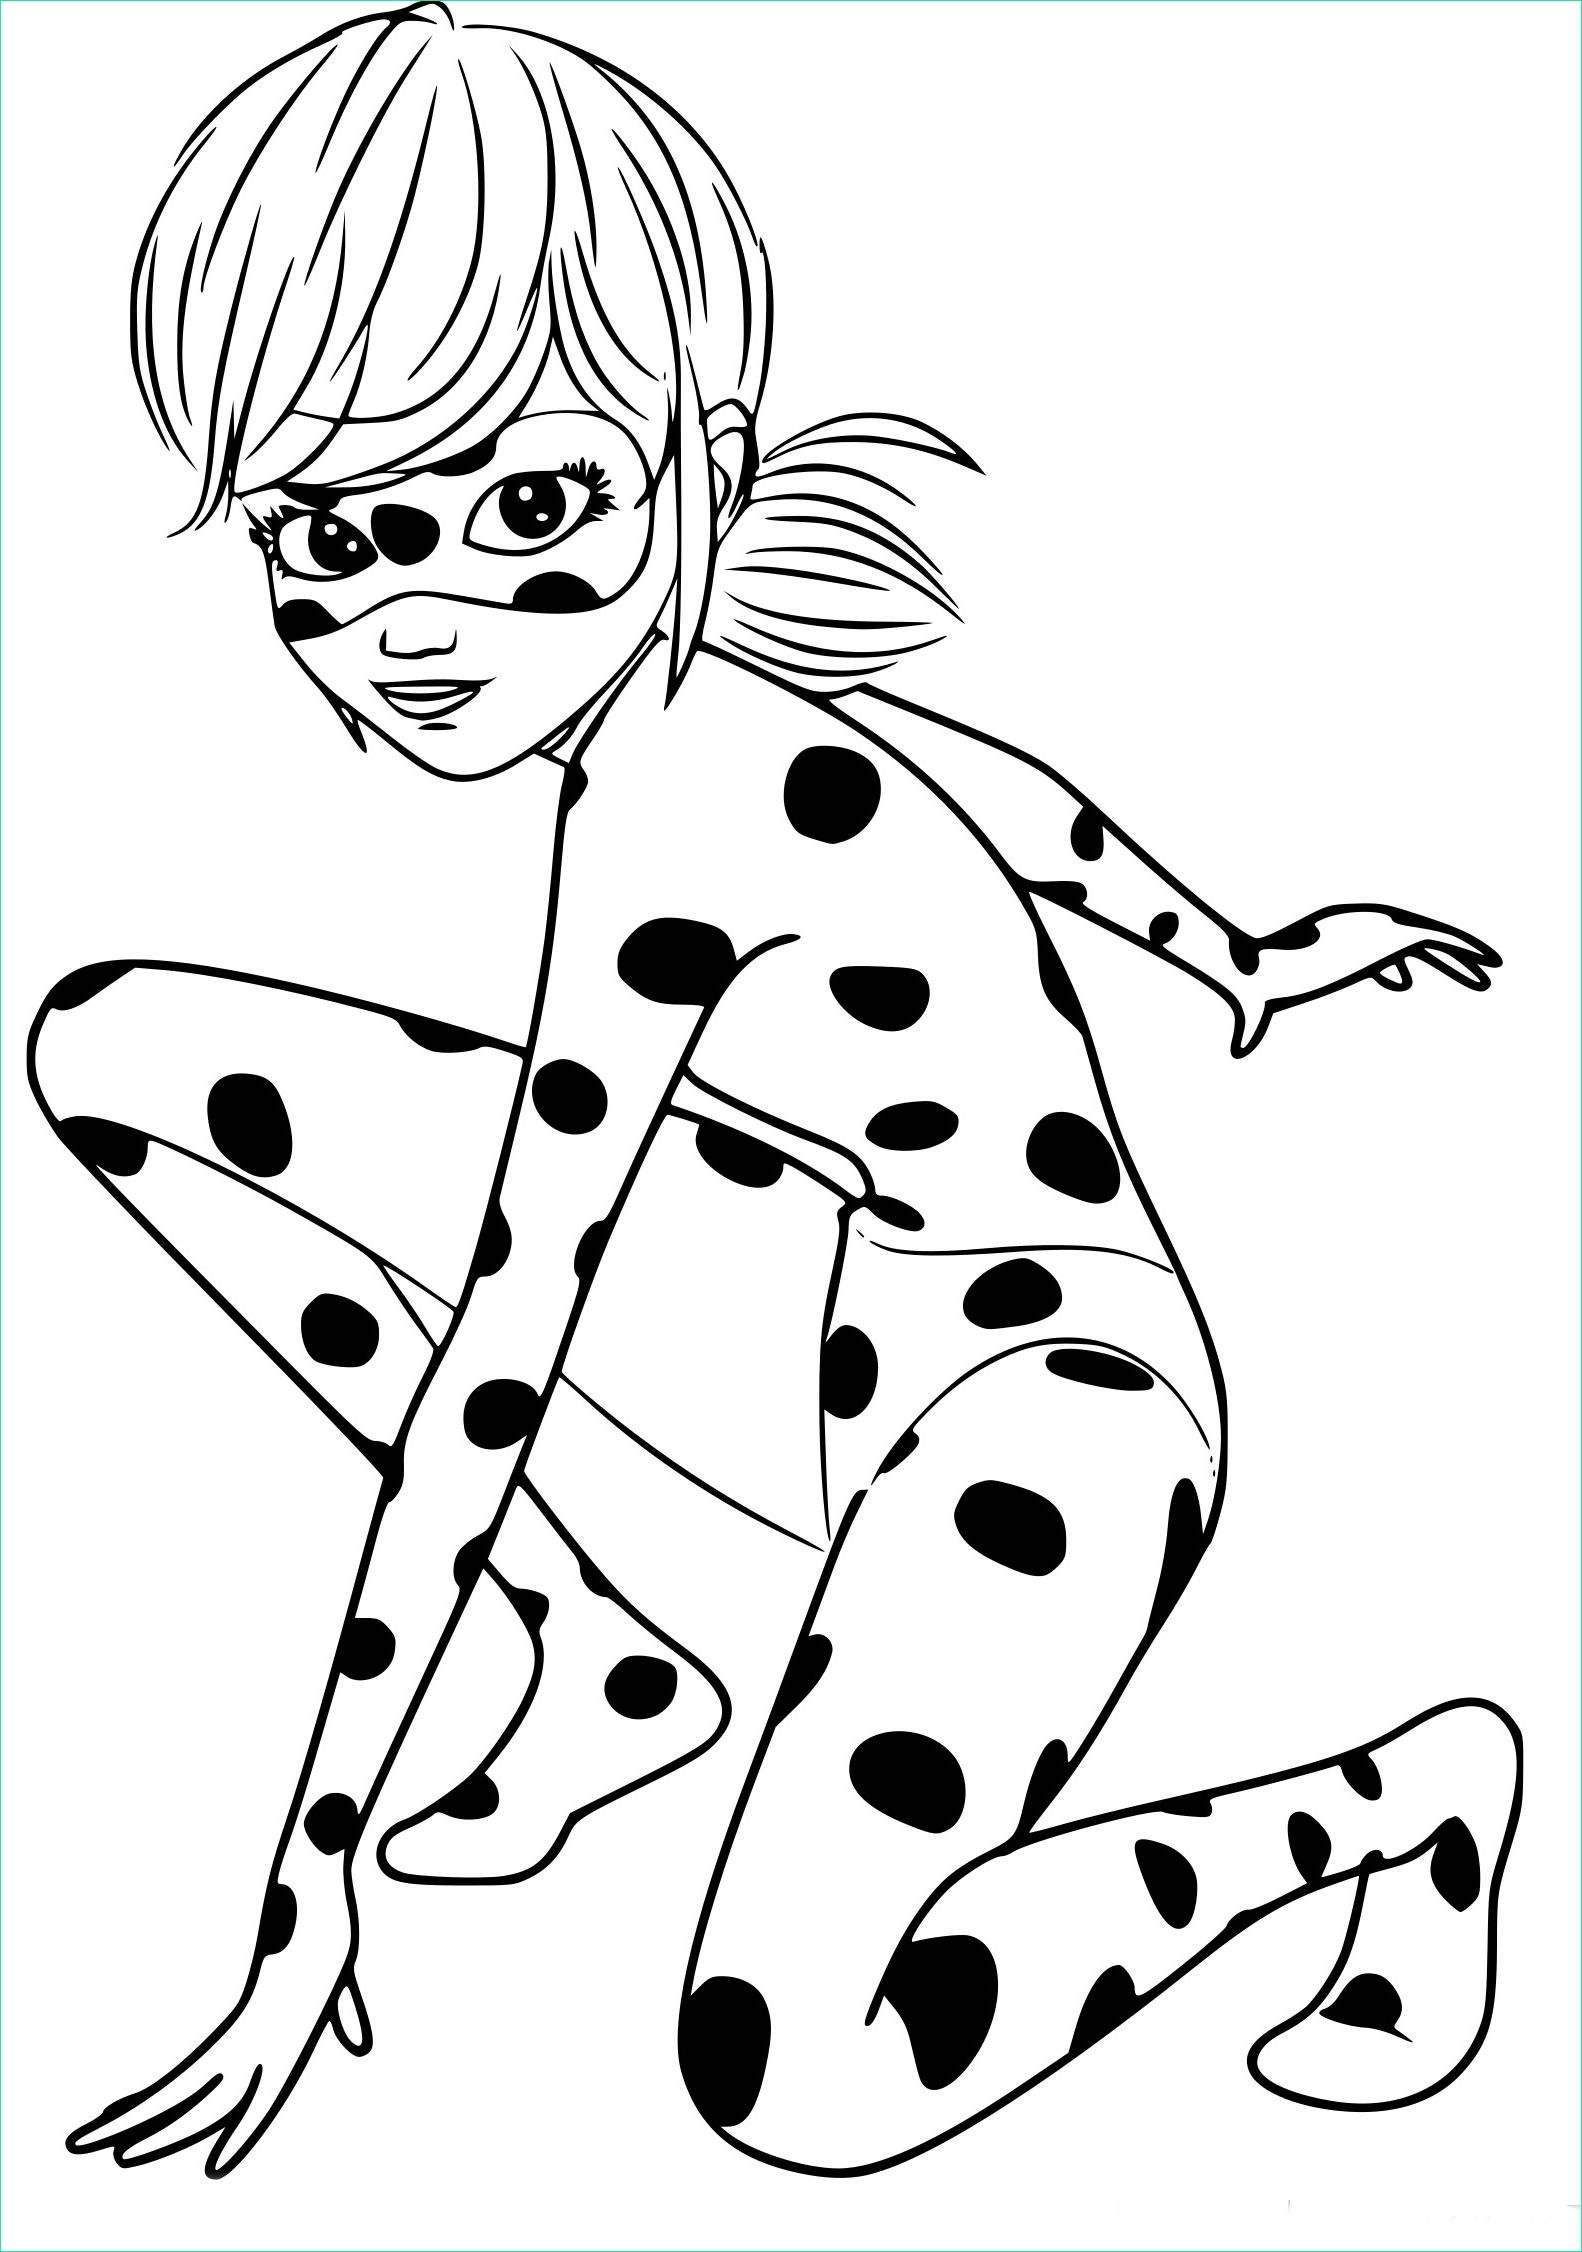 Dessin Miraculous Beau Image Coloriage Ladybug Miraculous à Imprimer Sur Coloriages Fo